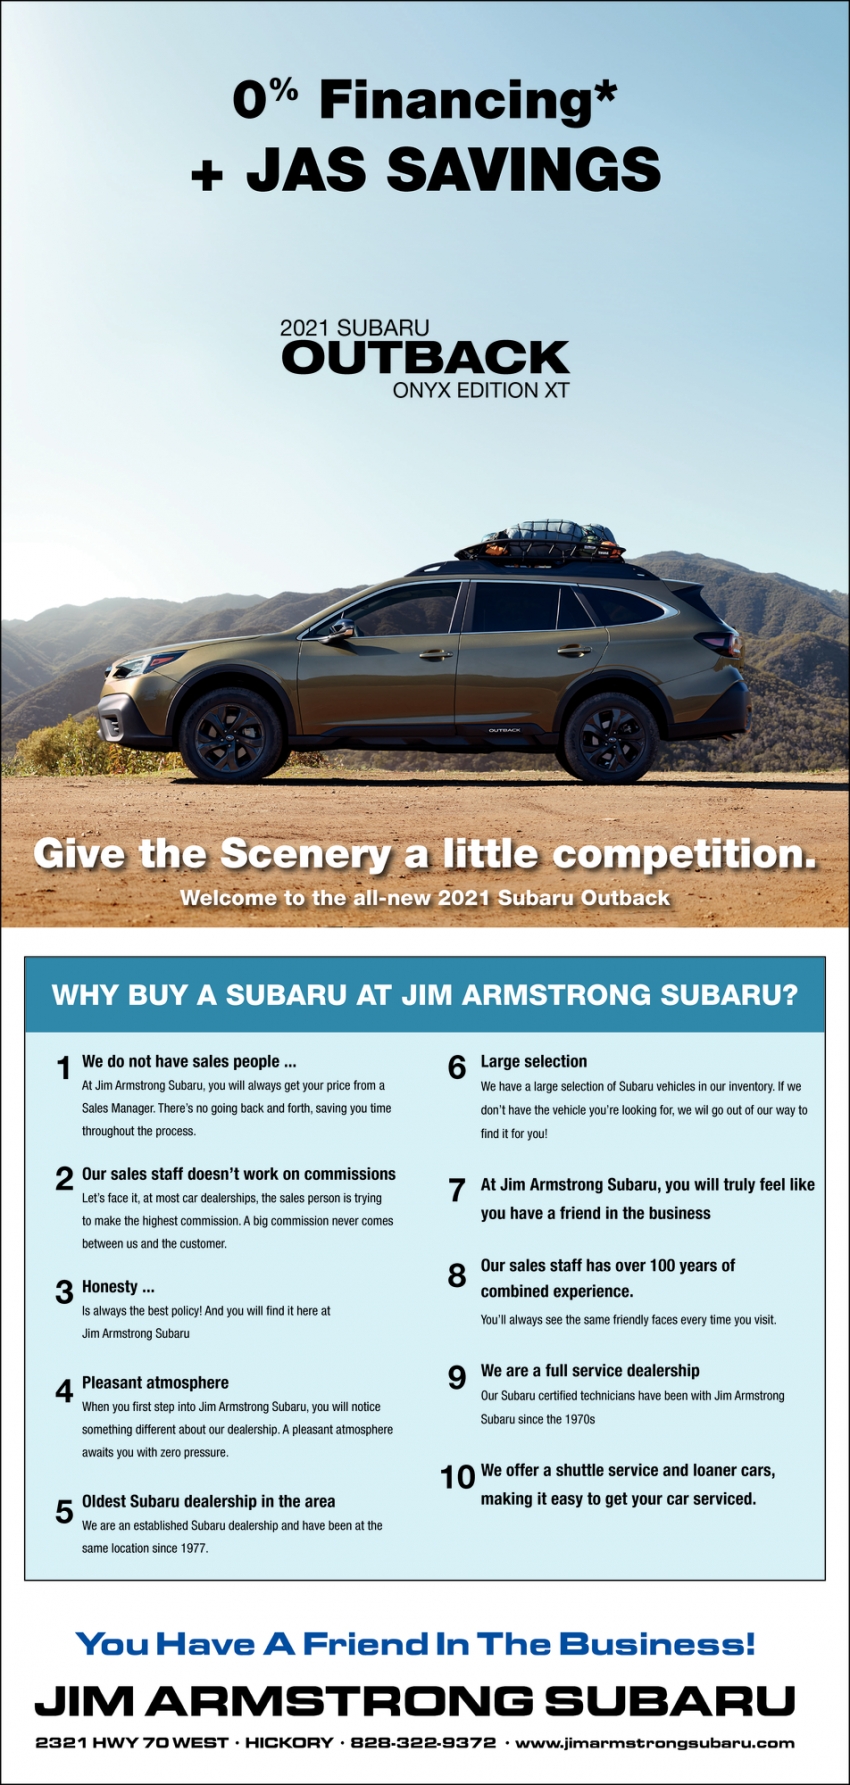 Why Buy a Subaru at Jim Armstrong Subaru?